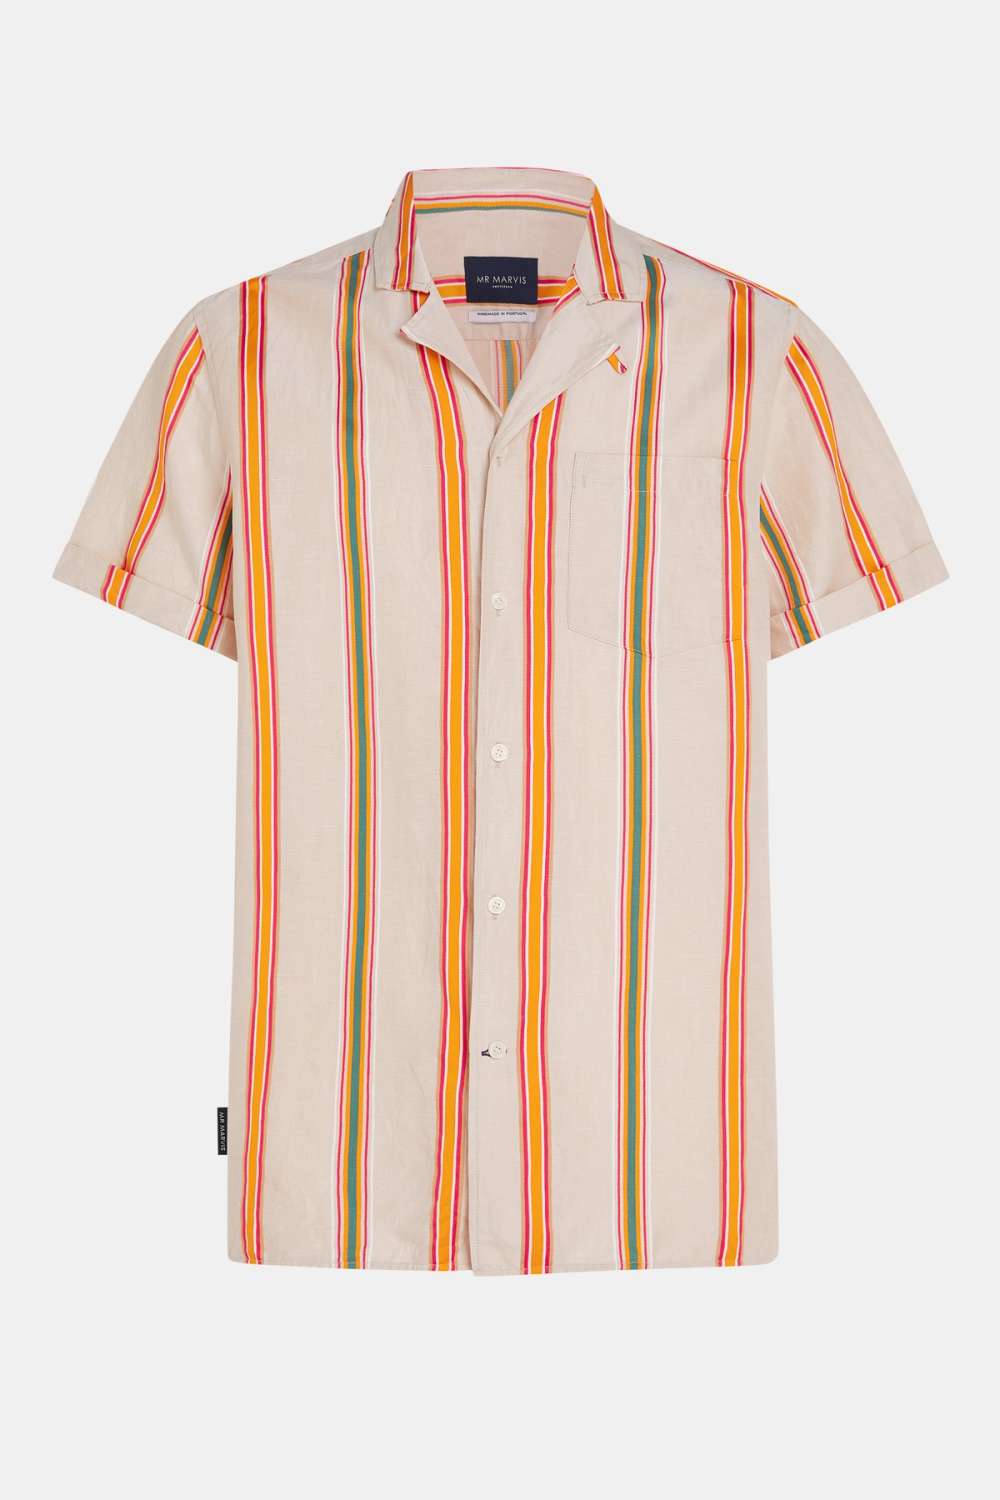 Arancione Stripes - La Camisa de Verano